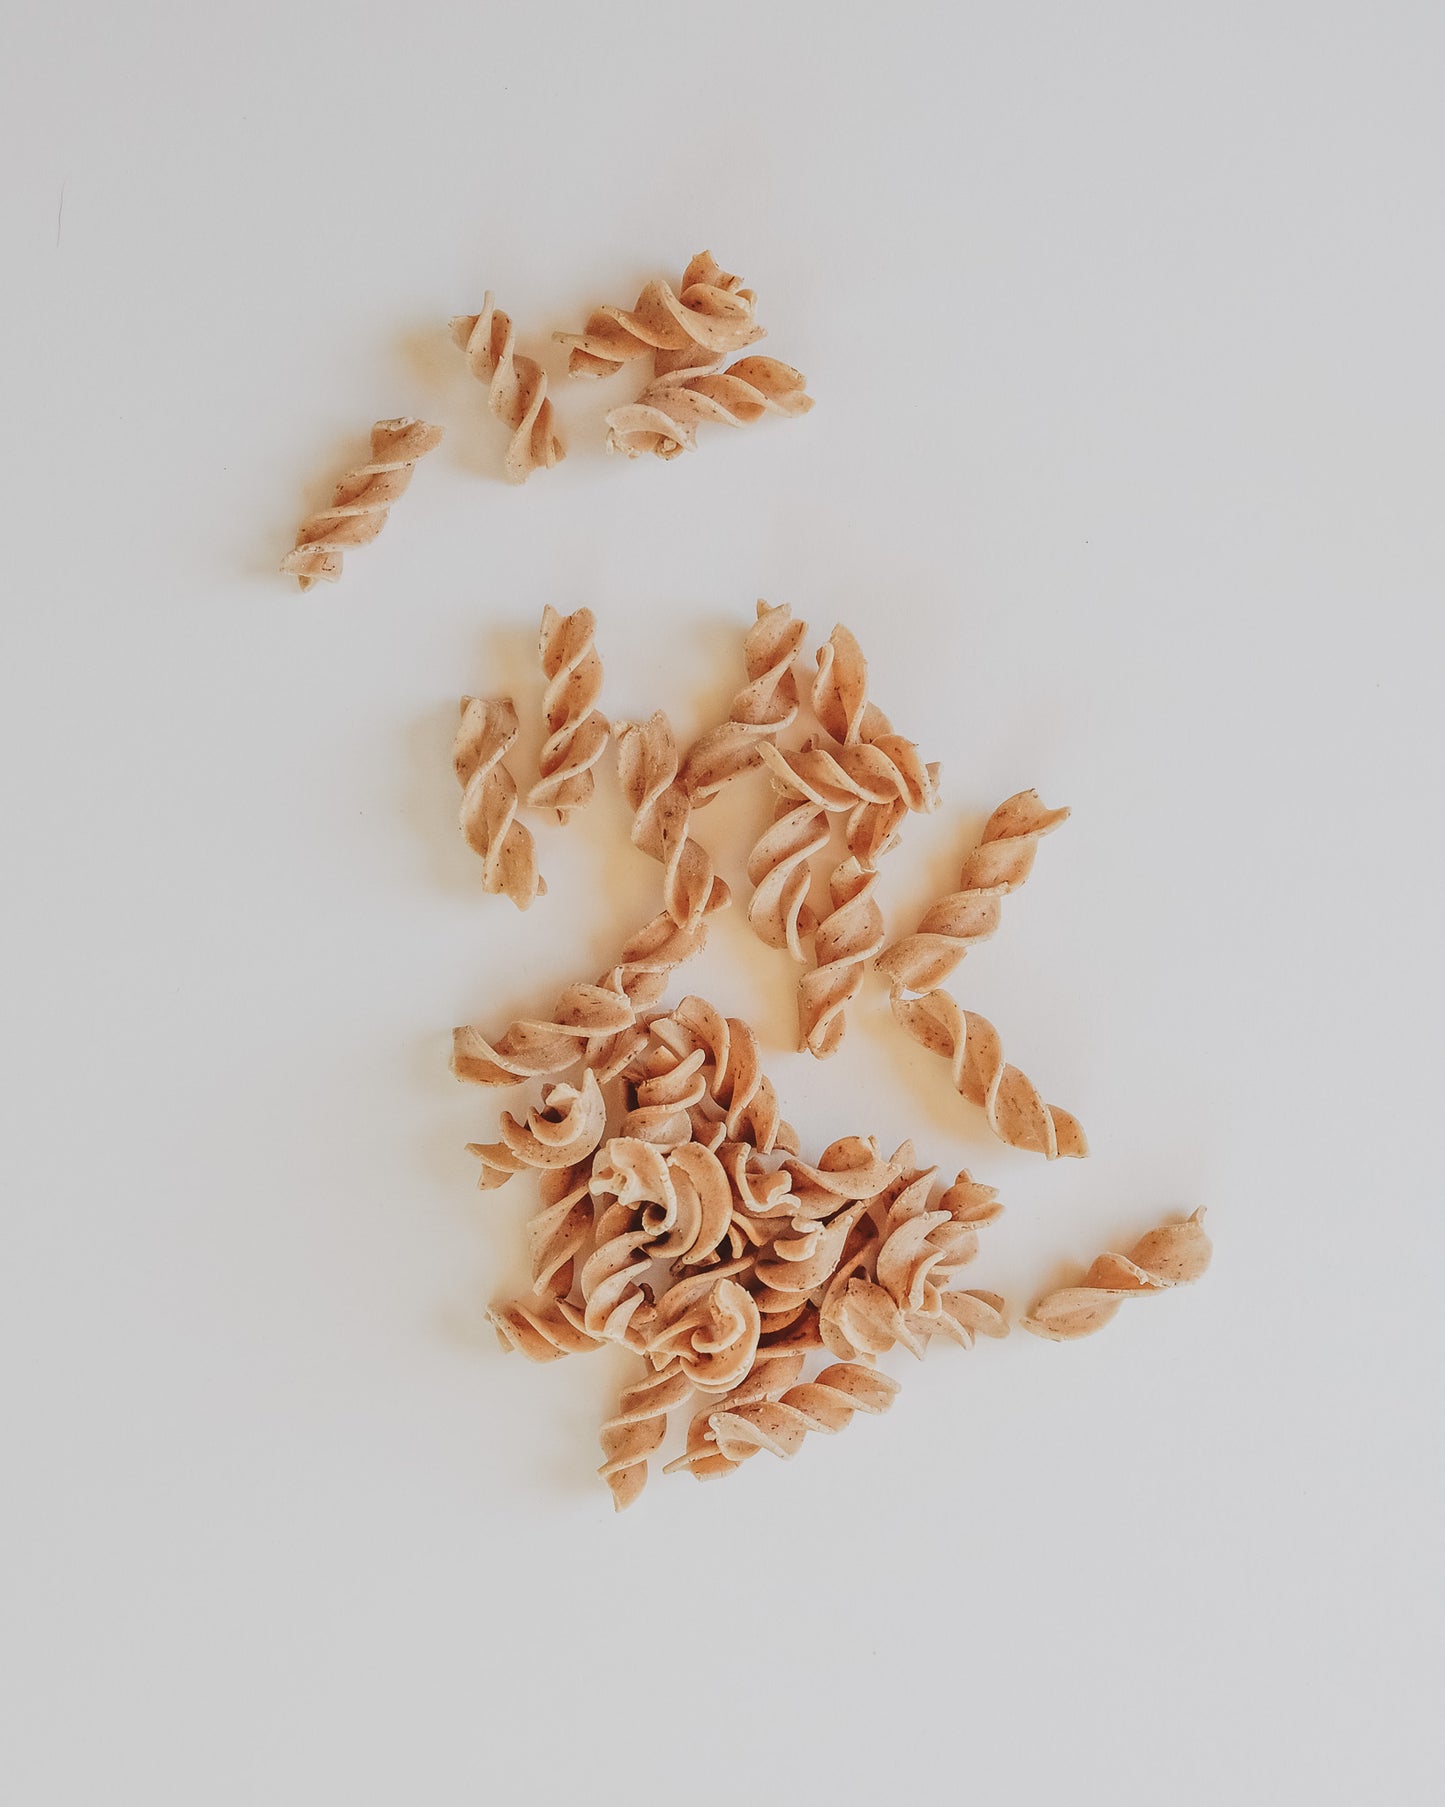 Clarella Grain Free Pasta - Fusilli 250g